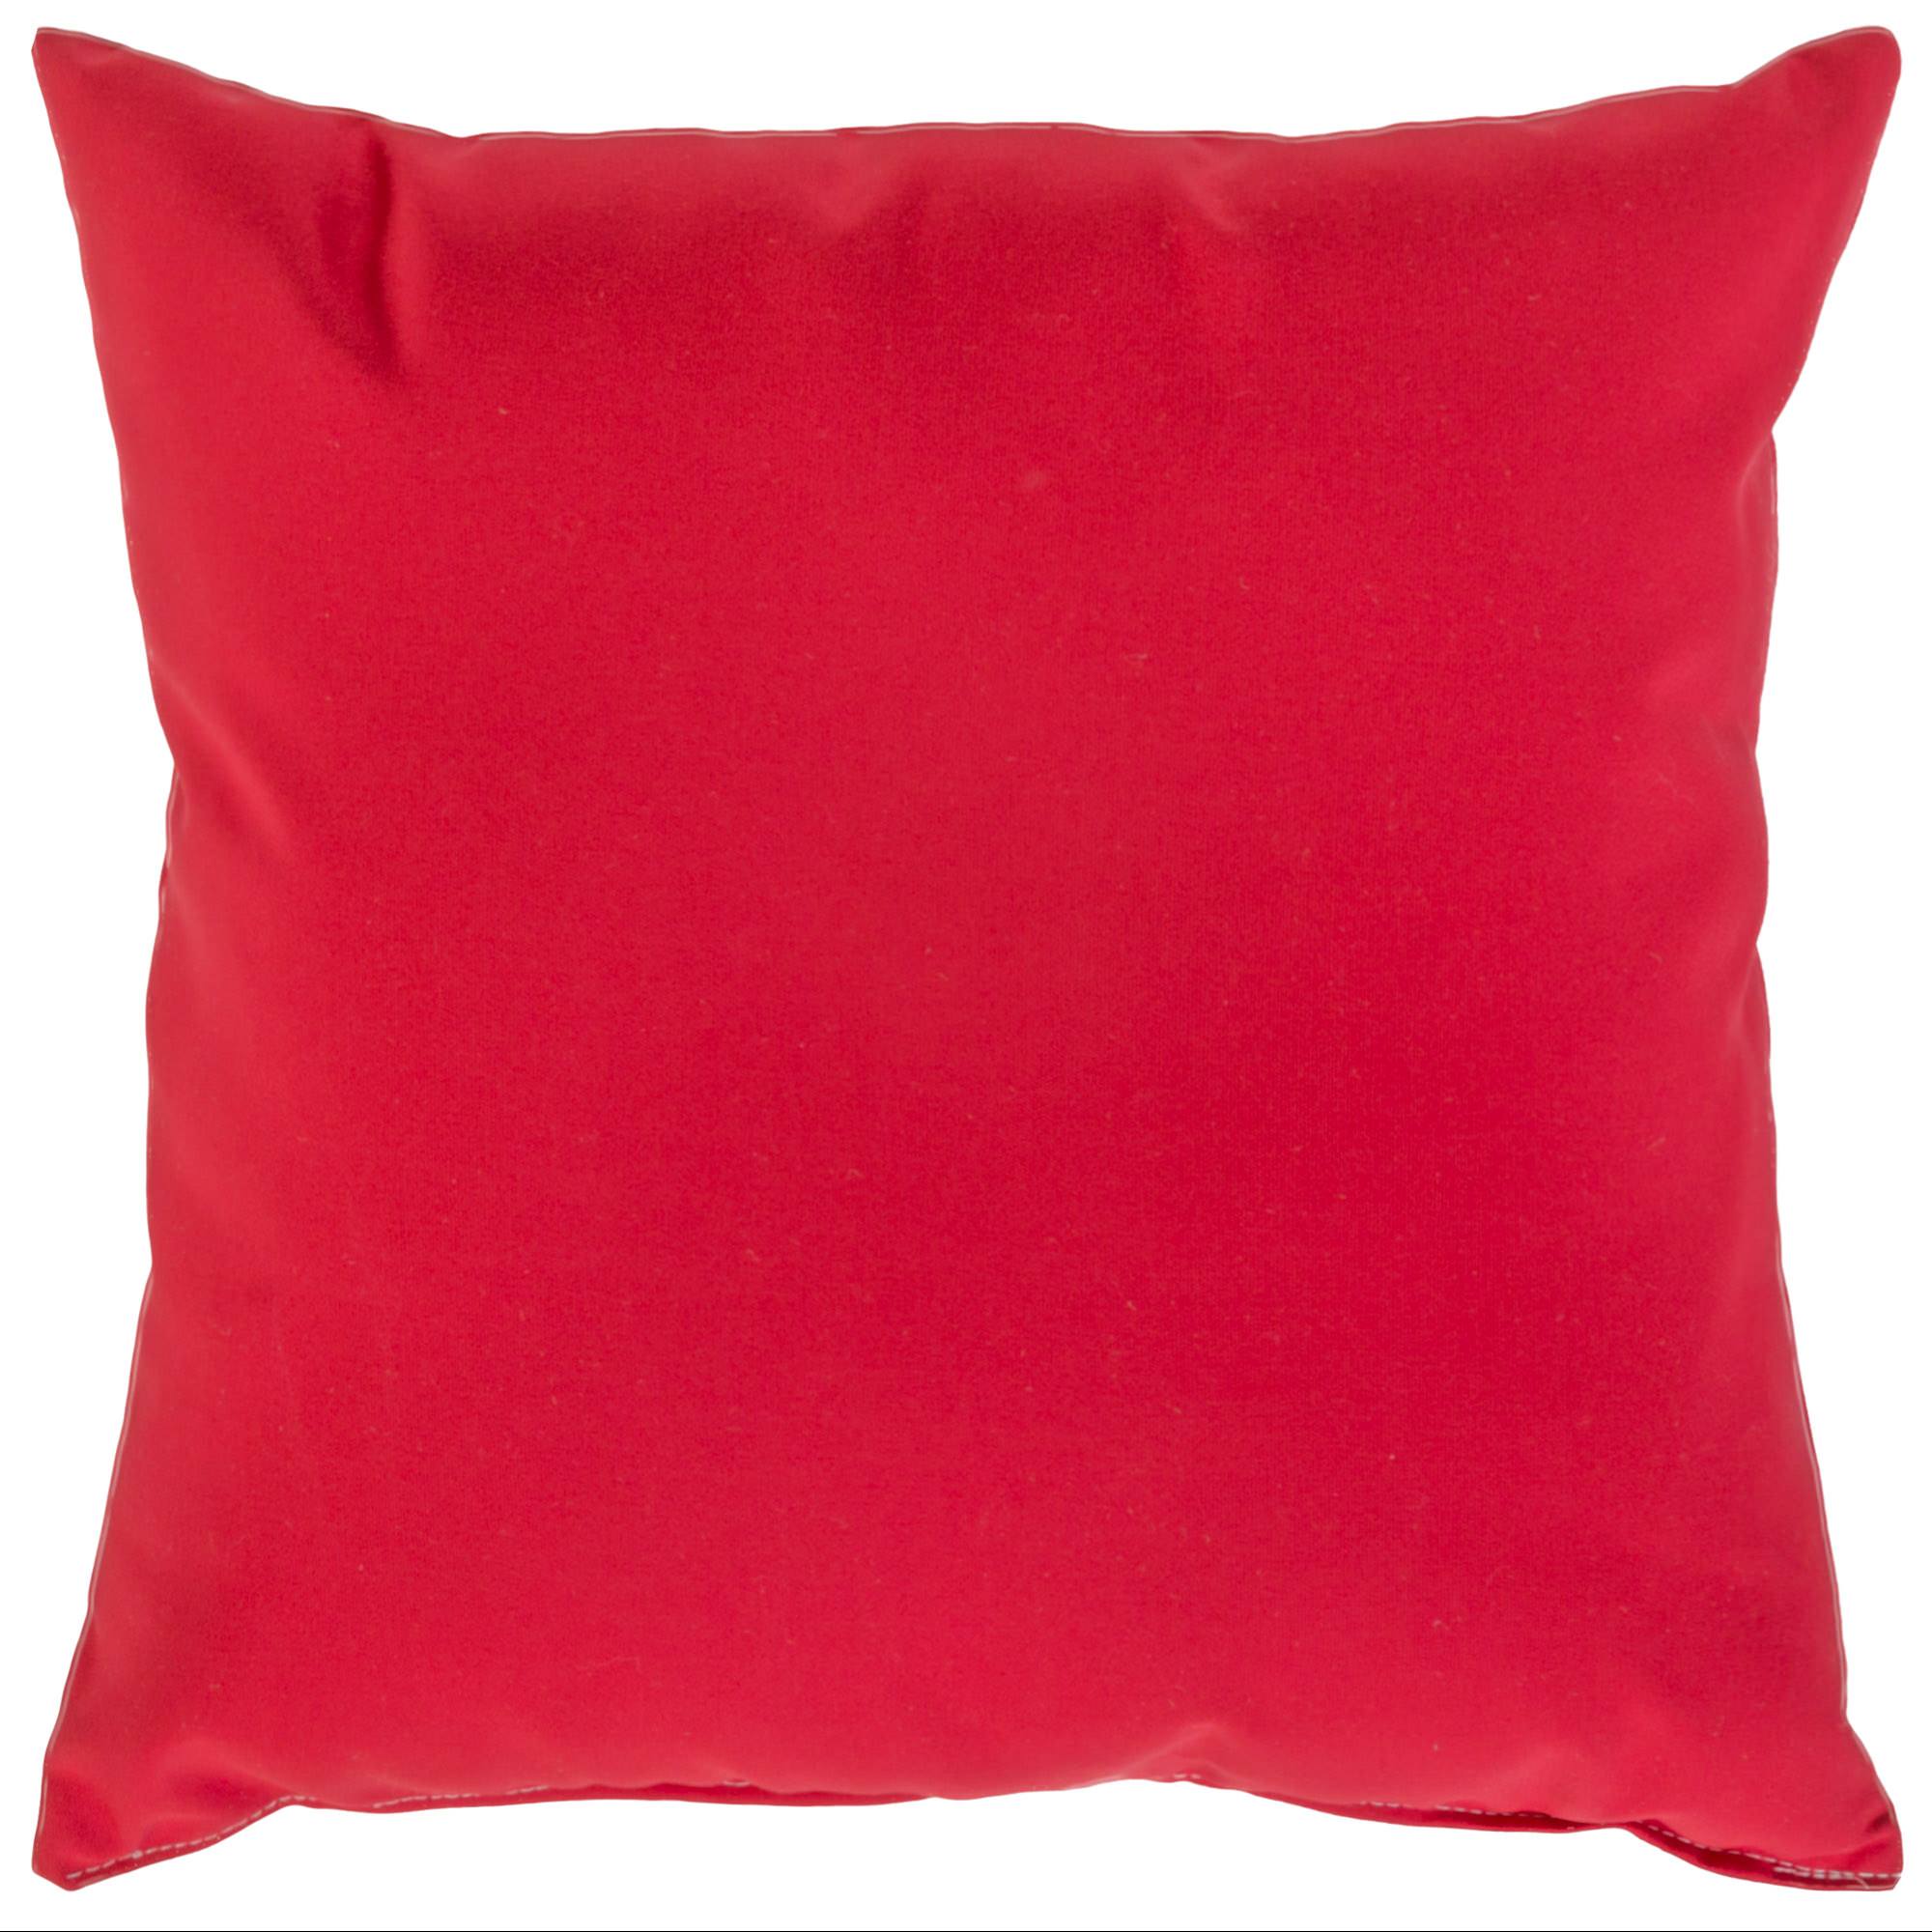 Купить подушку прямоугольную. Декоративные подушки. Яркие подушки. Подушки квадратные декоративные. Подушка красный.